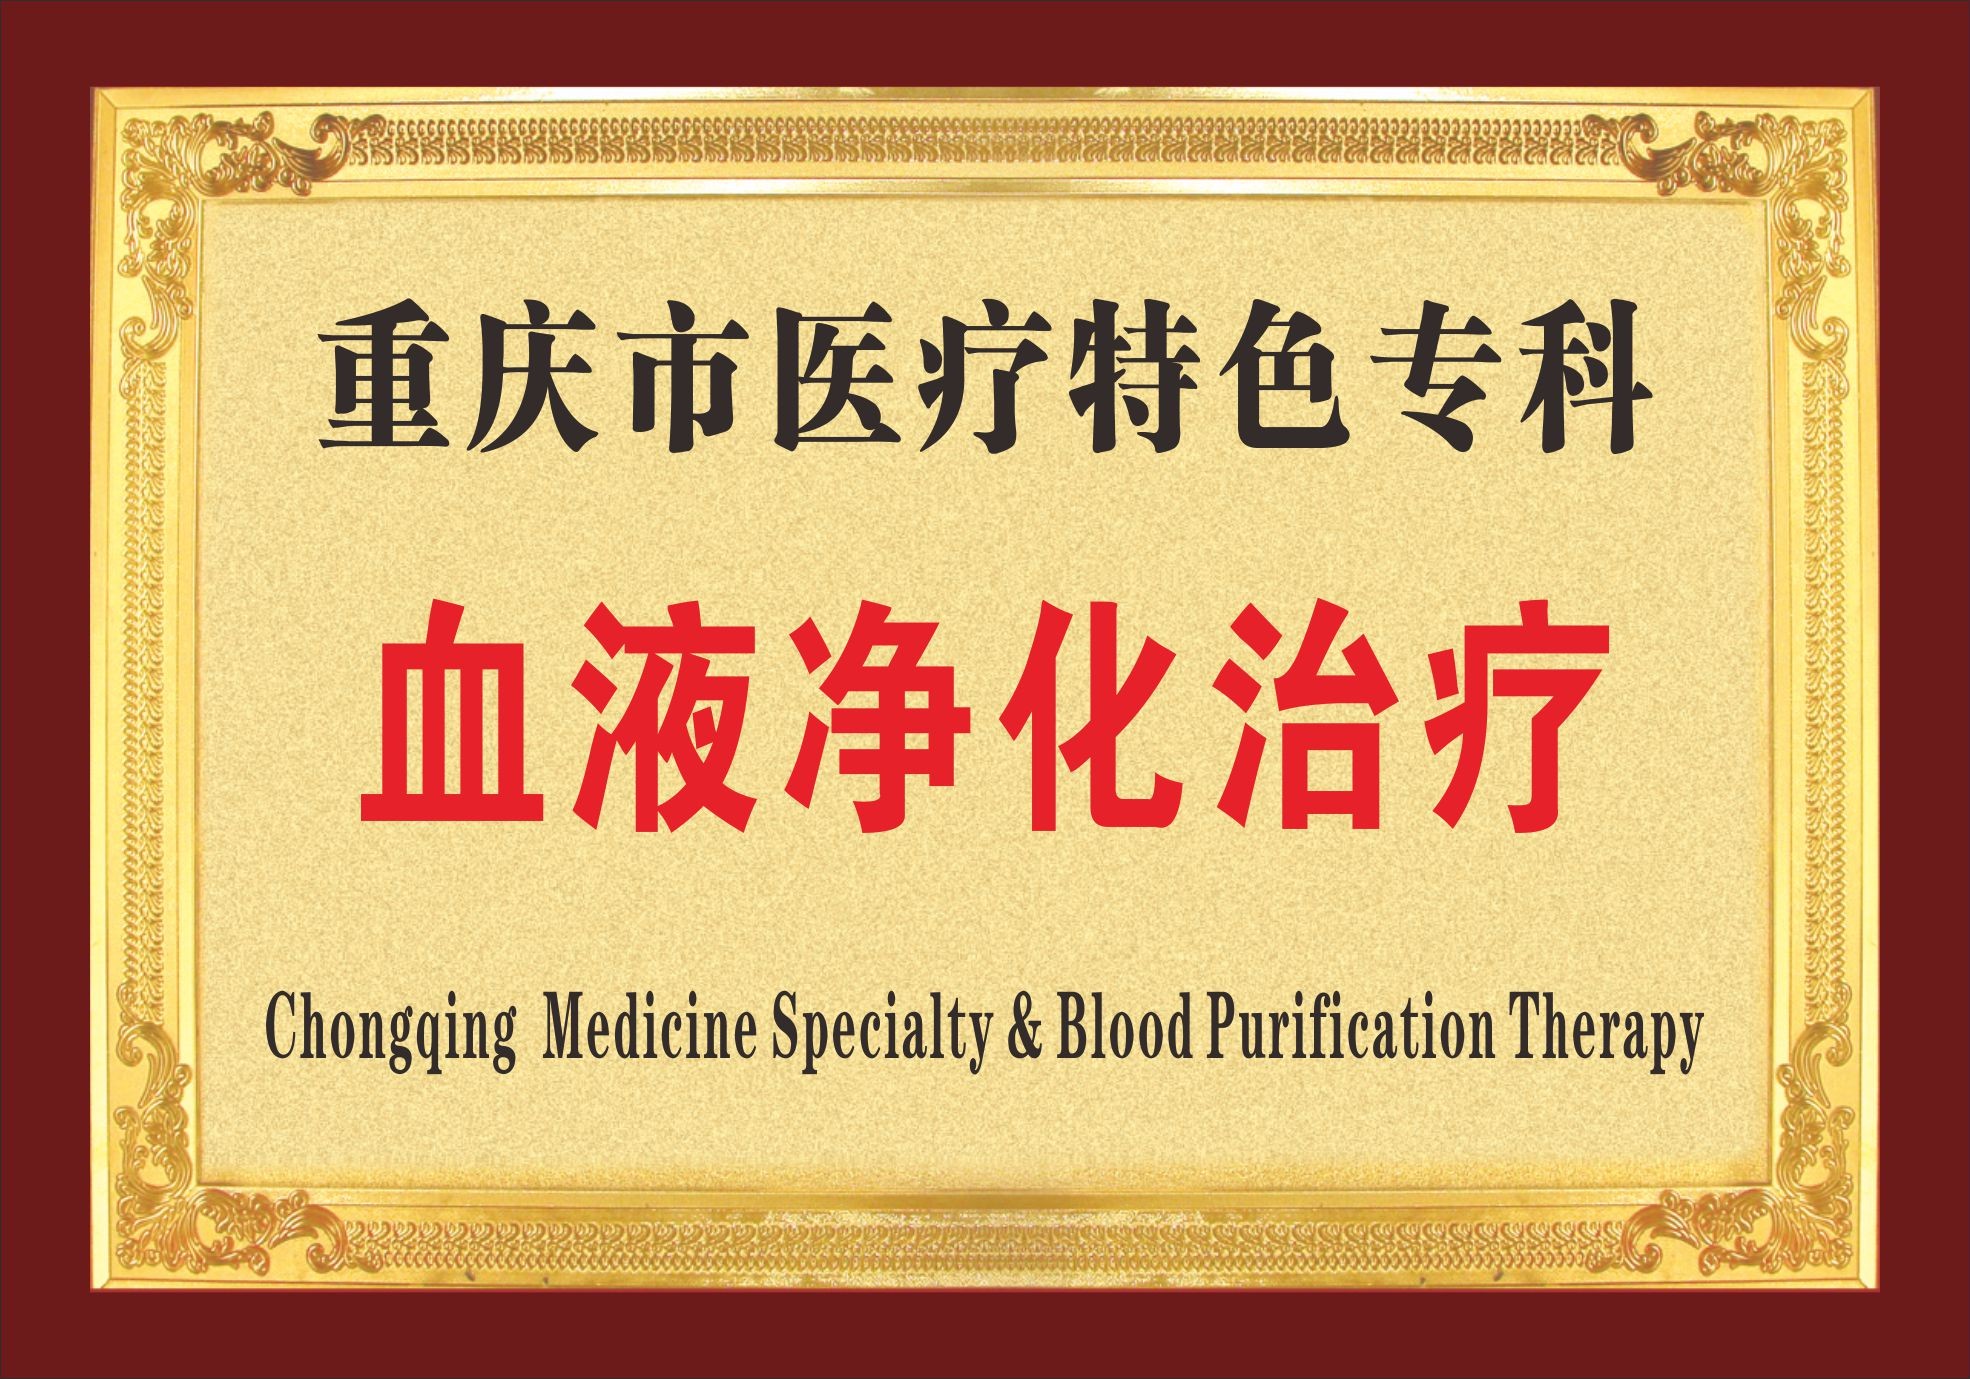 重庆市医疗特色专科血液净化治疗奖牌